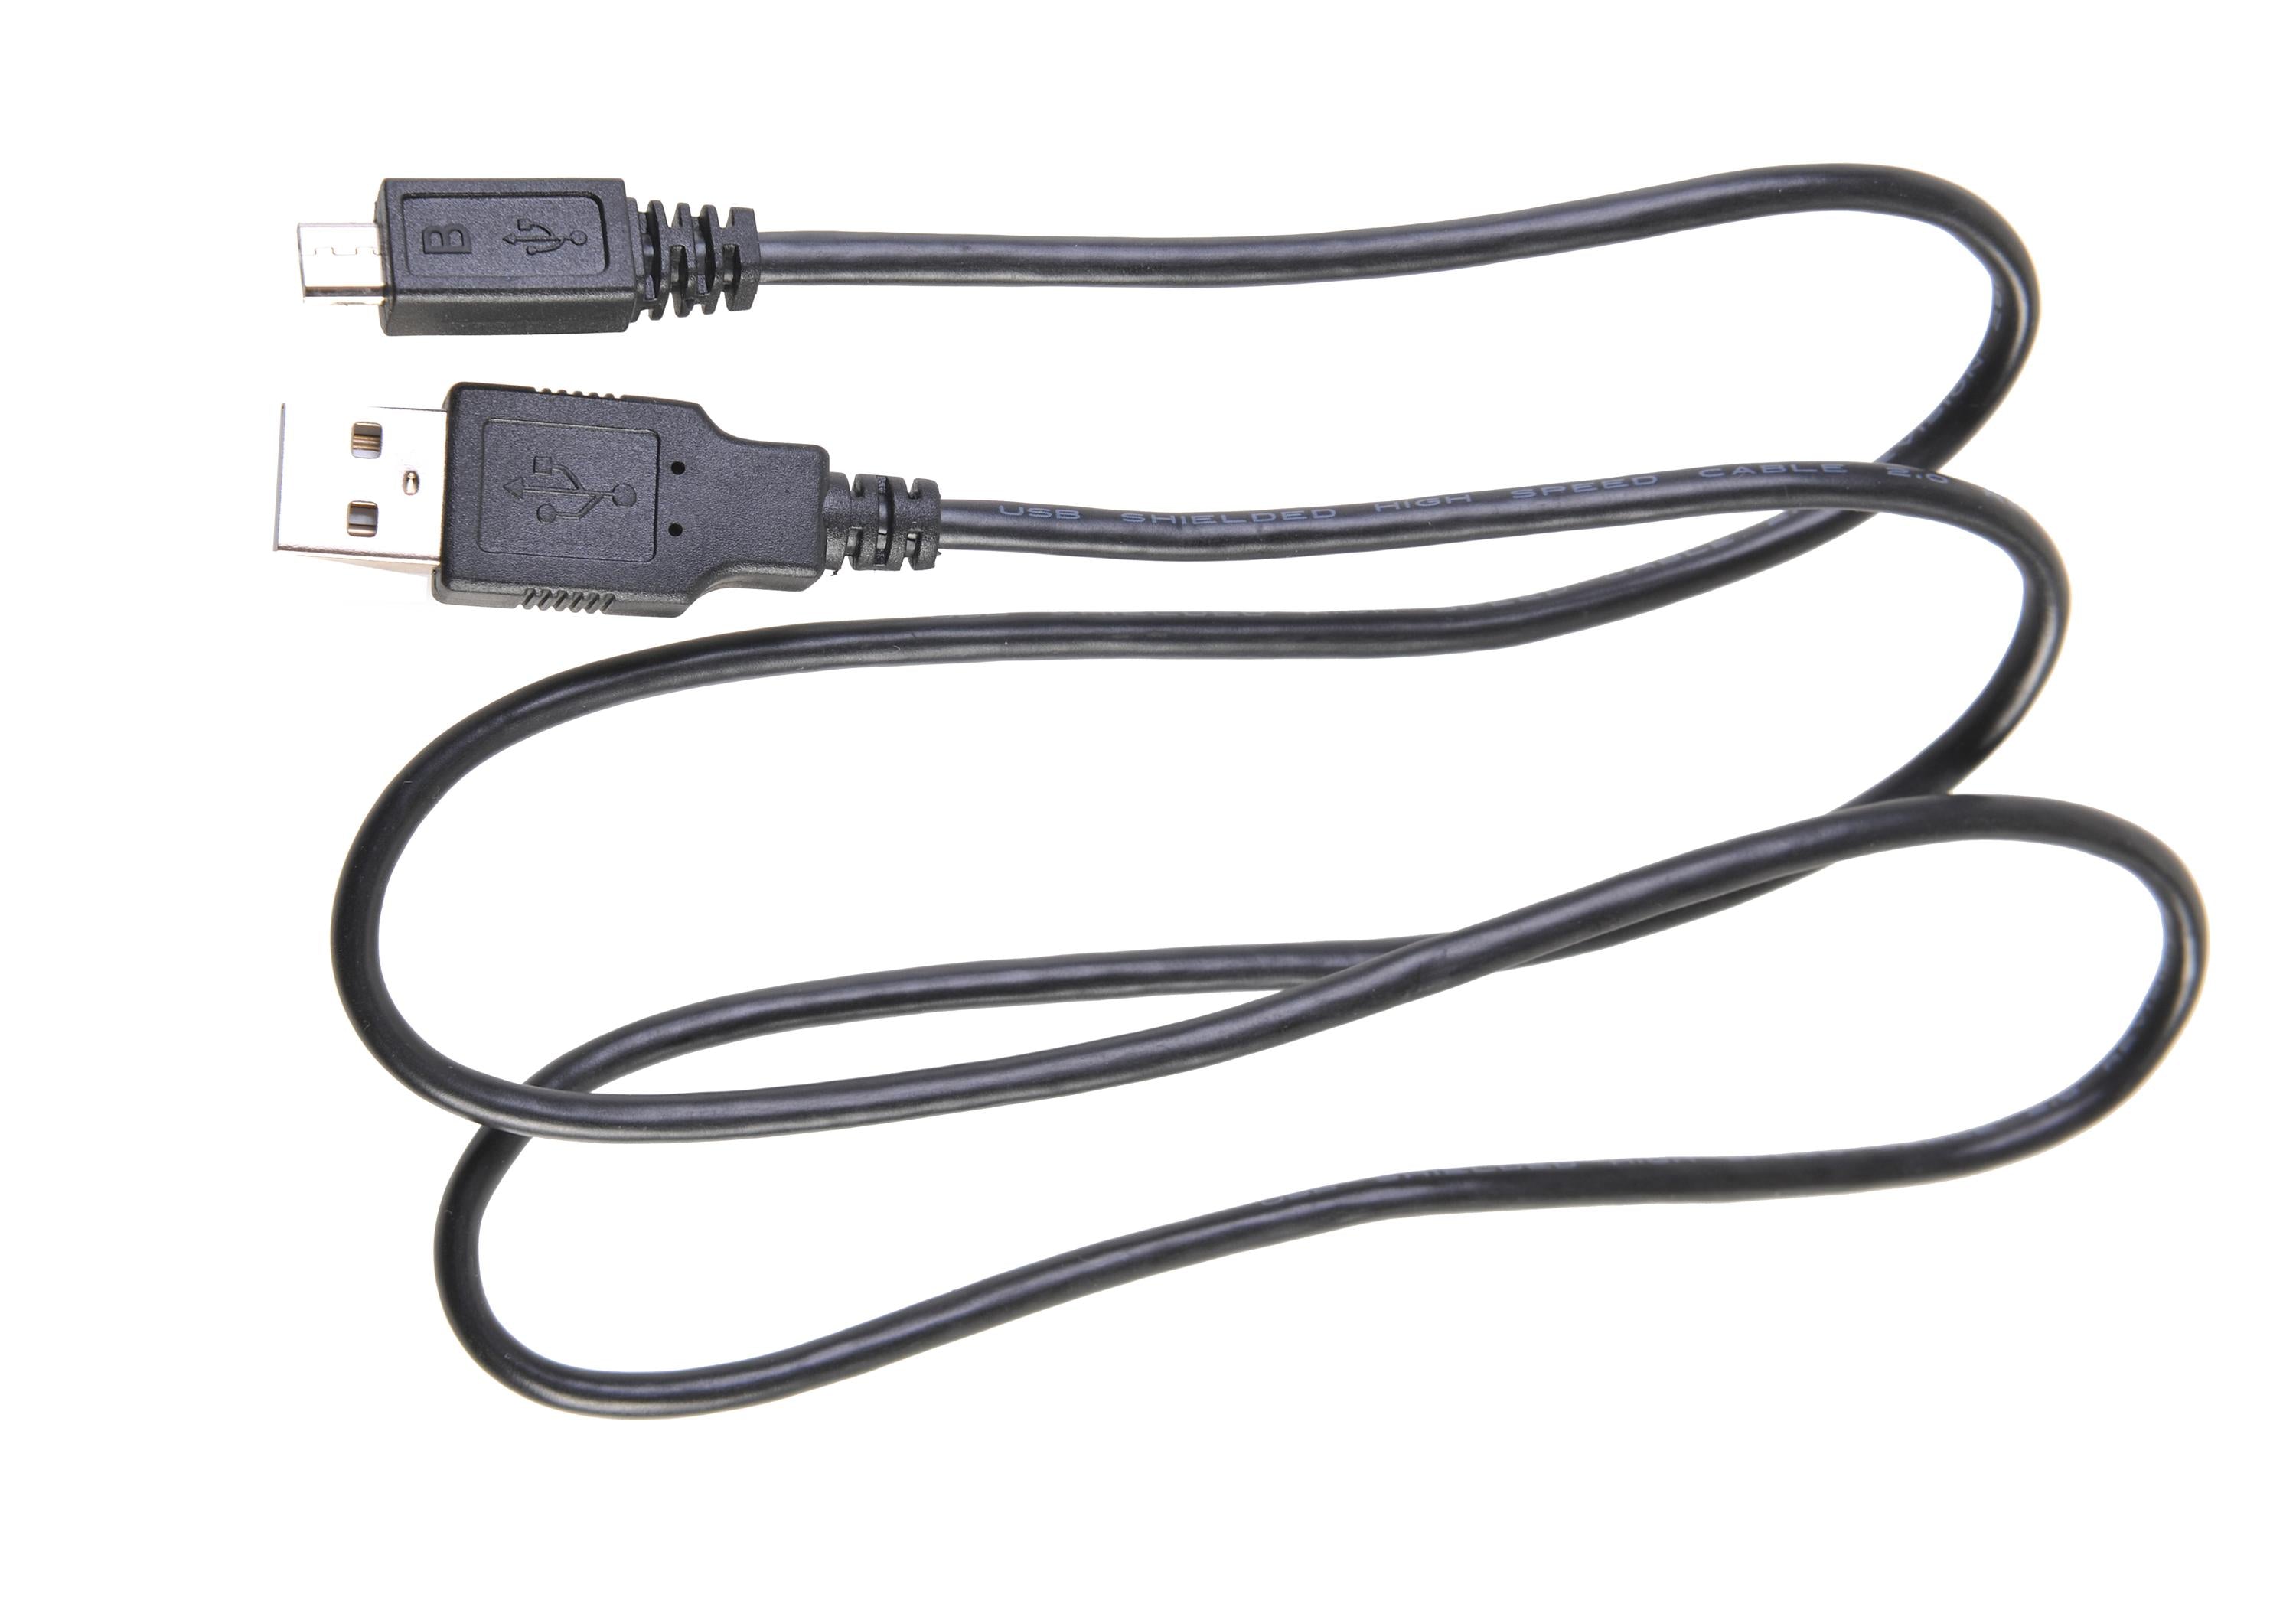 Iridium 9555 Satellite Phone USB Cable